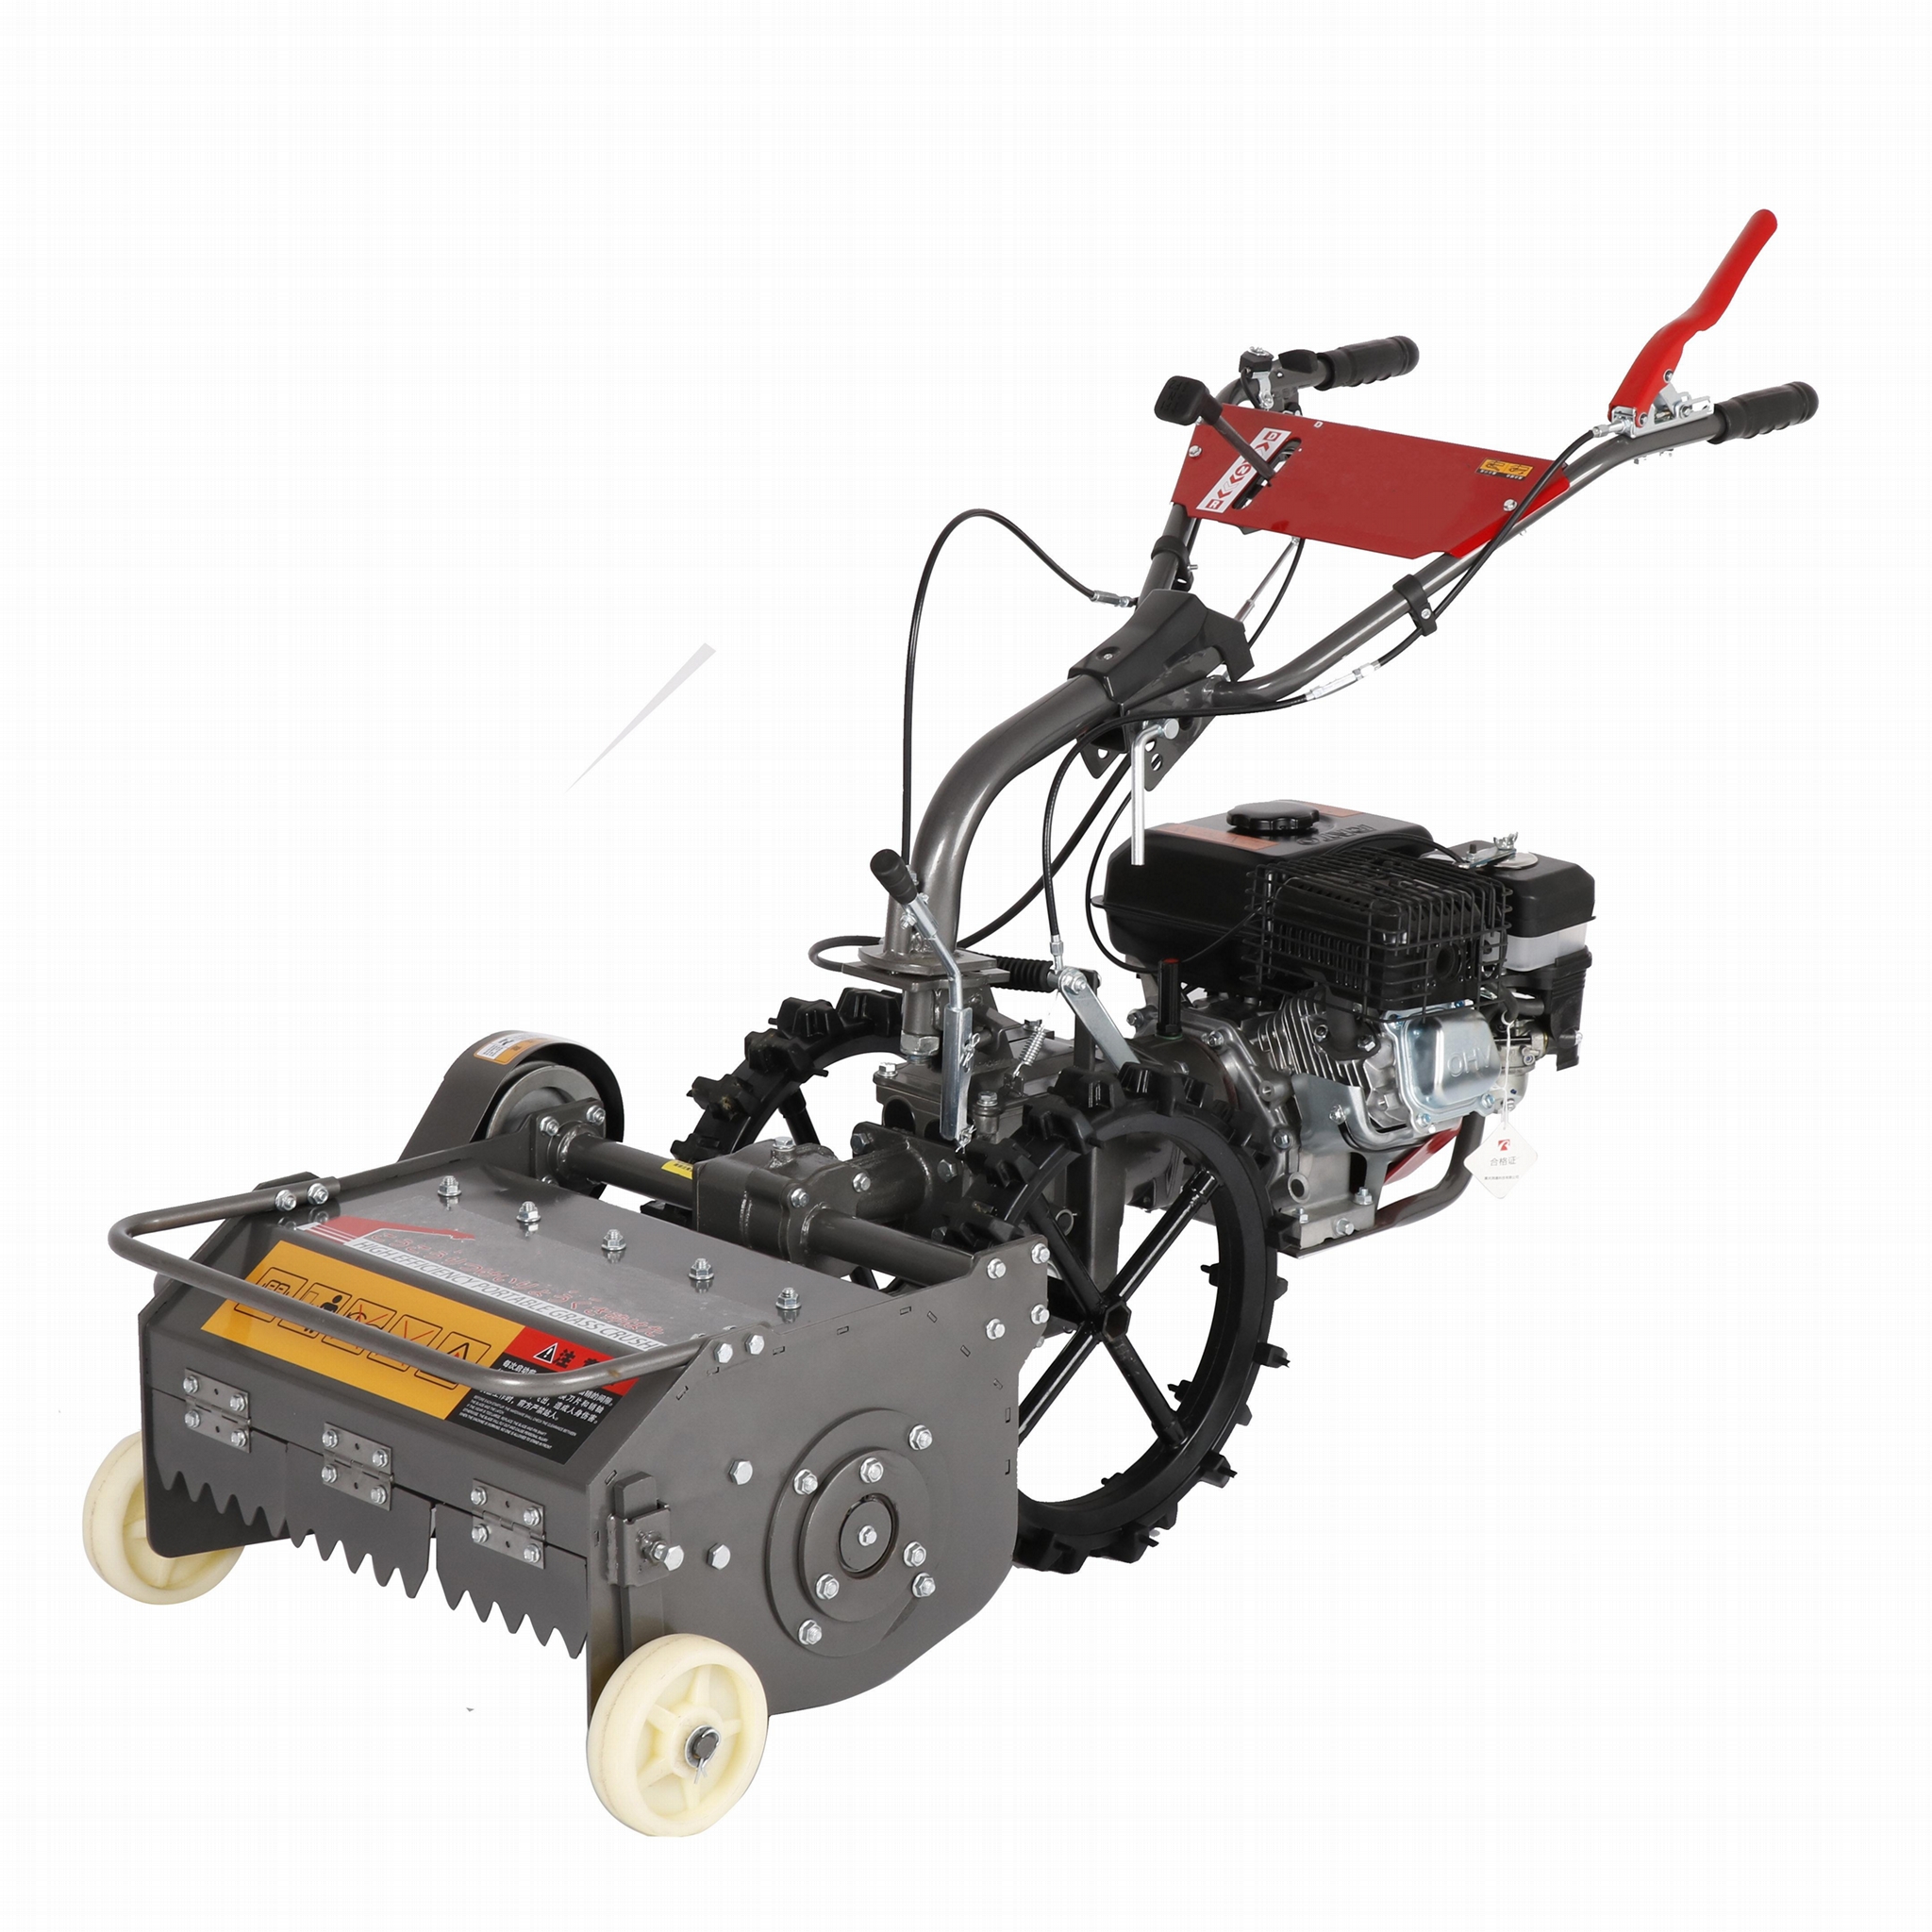 EPM500 Flail-Mower-7.5Hp-Petarden-Grass-Cutter-Stubble-Mowerrol-Engine-G